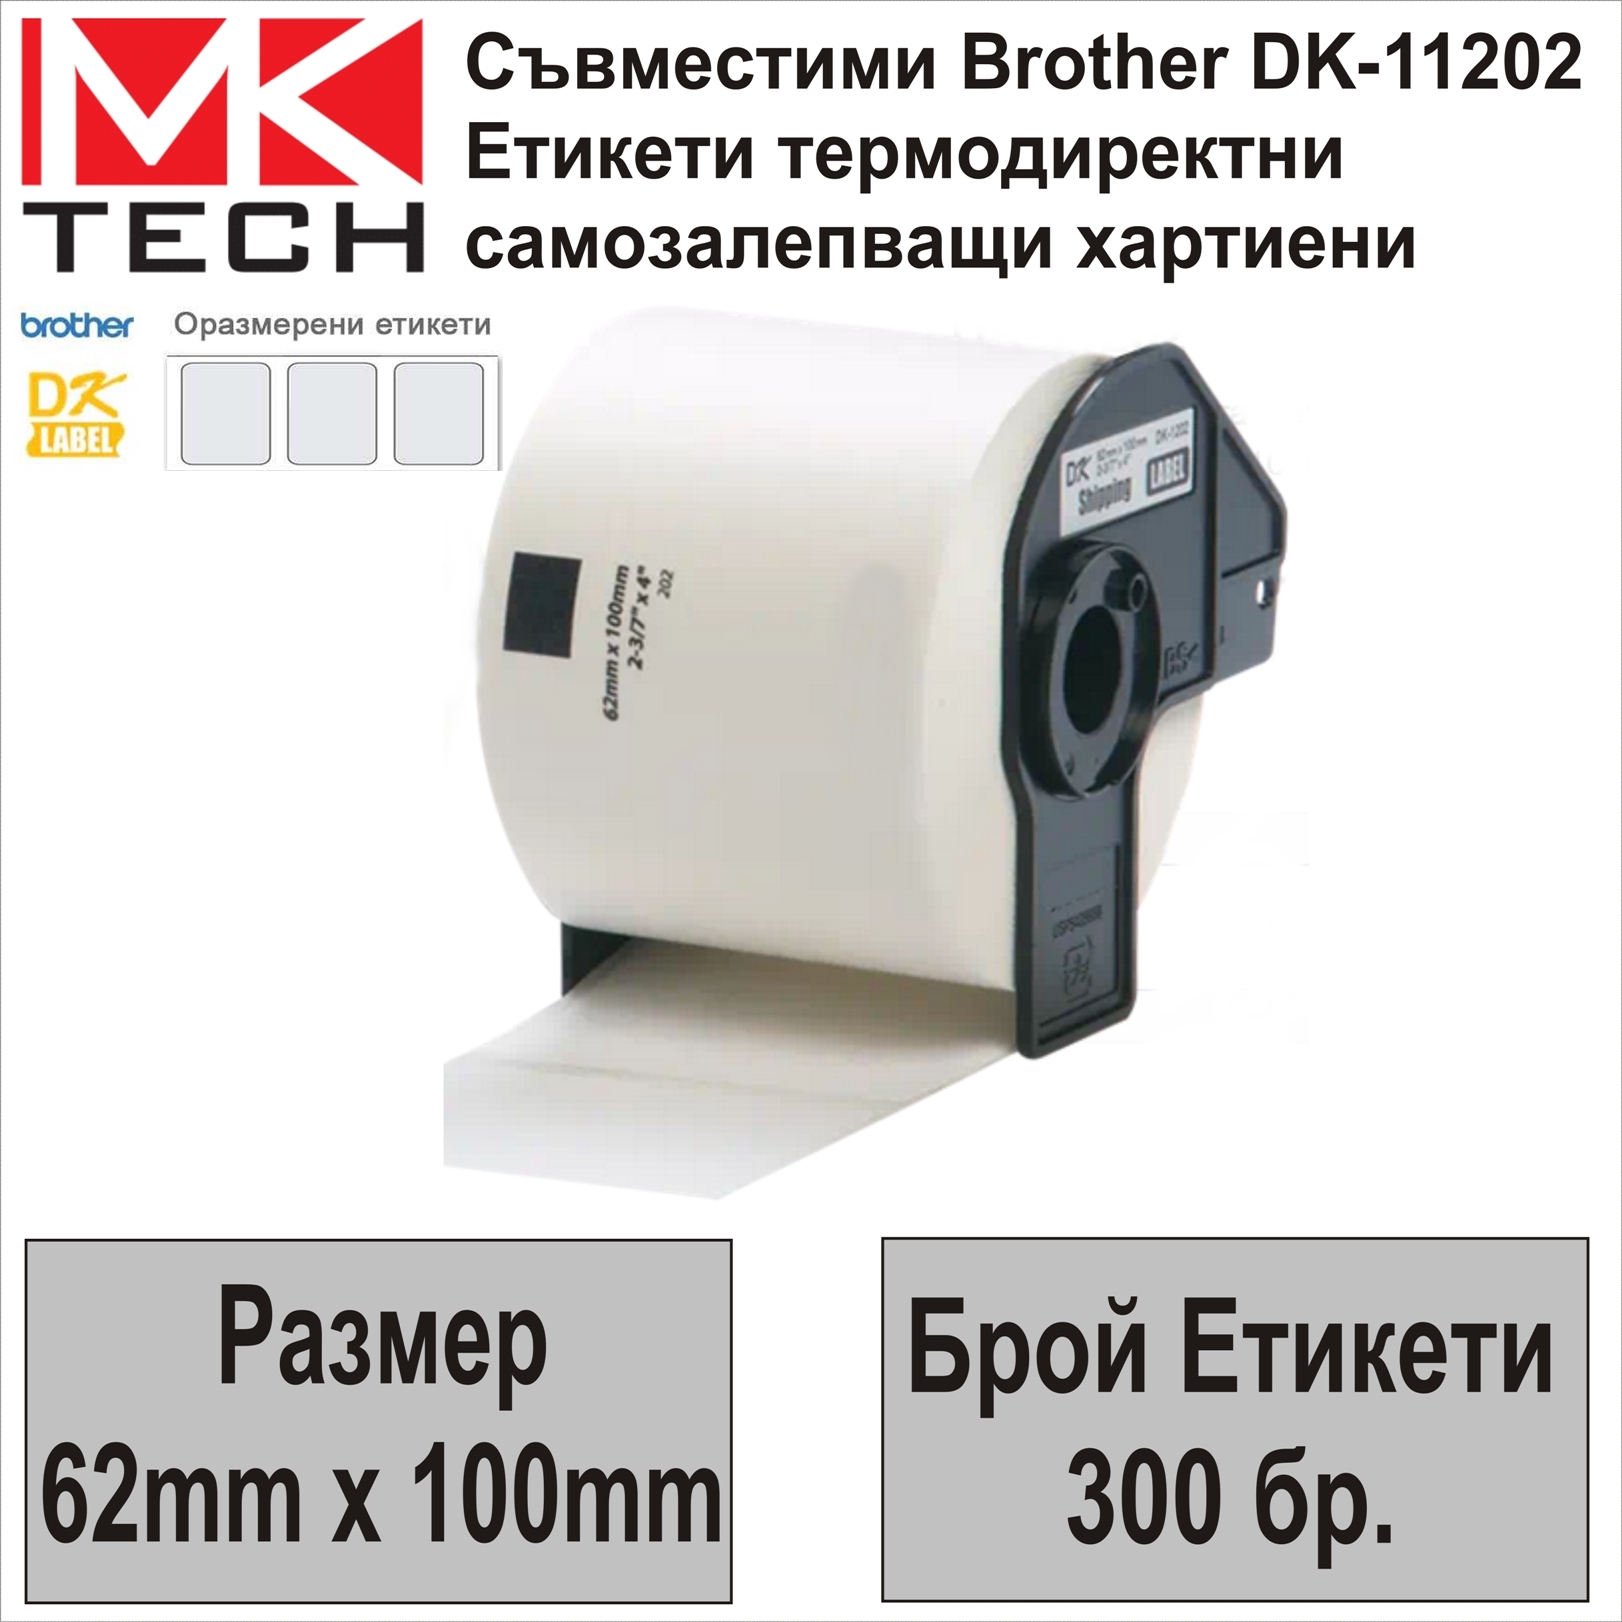 Е-ти Brother DK-11202(62x100mm,300бр.)Съвместими